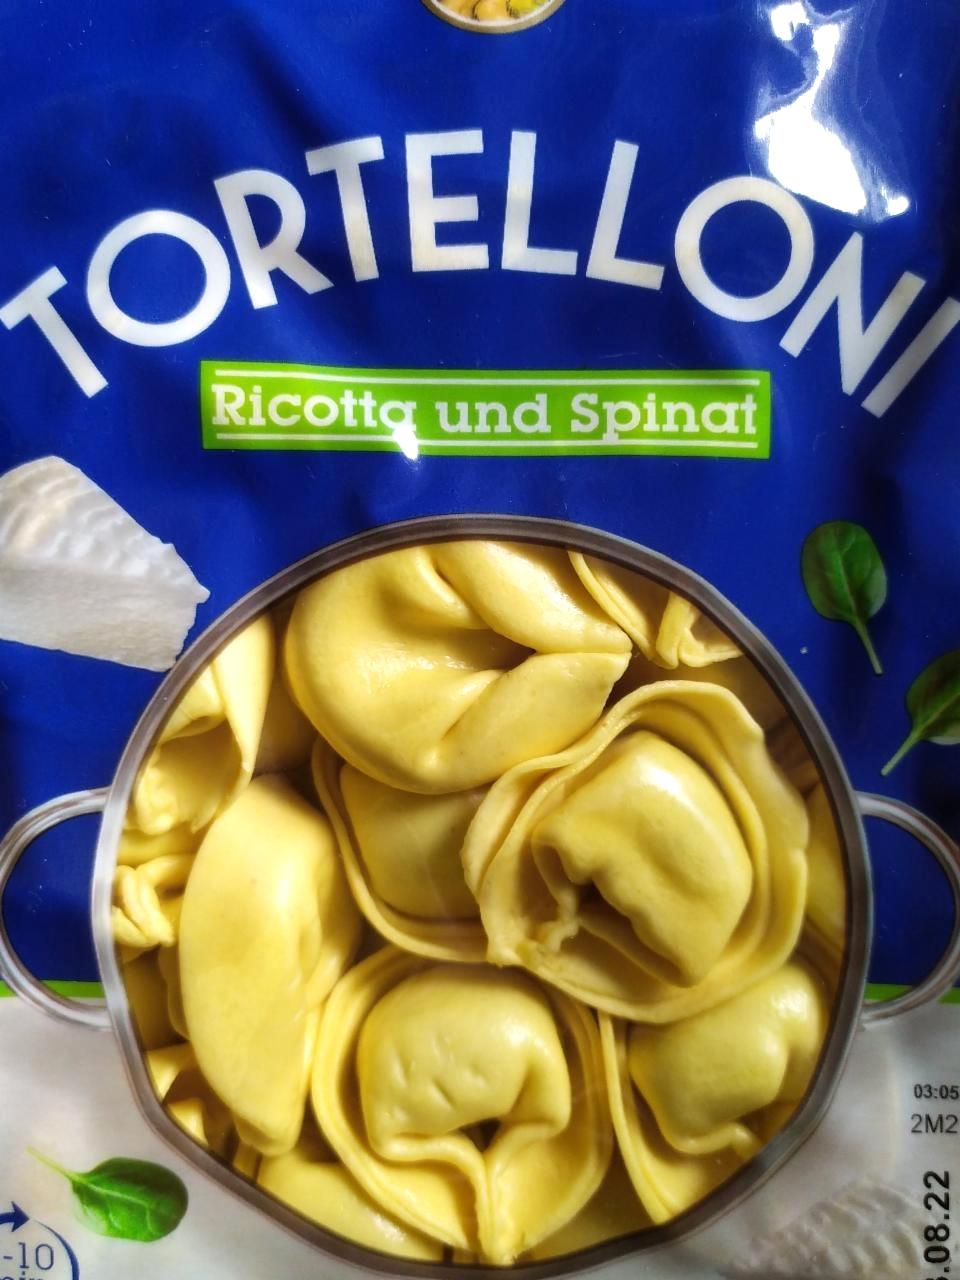 Képek - Tortelloni Ricotta und spinat Cucina Nobile